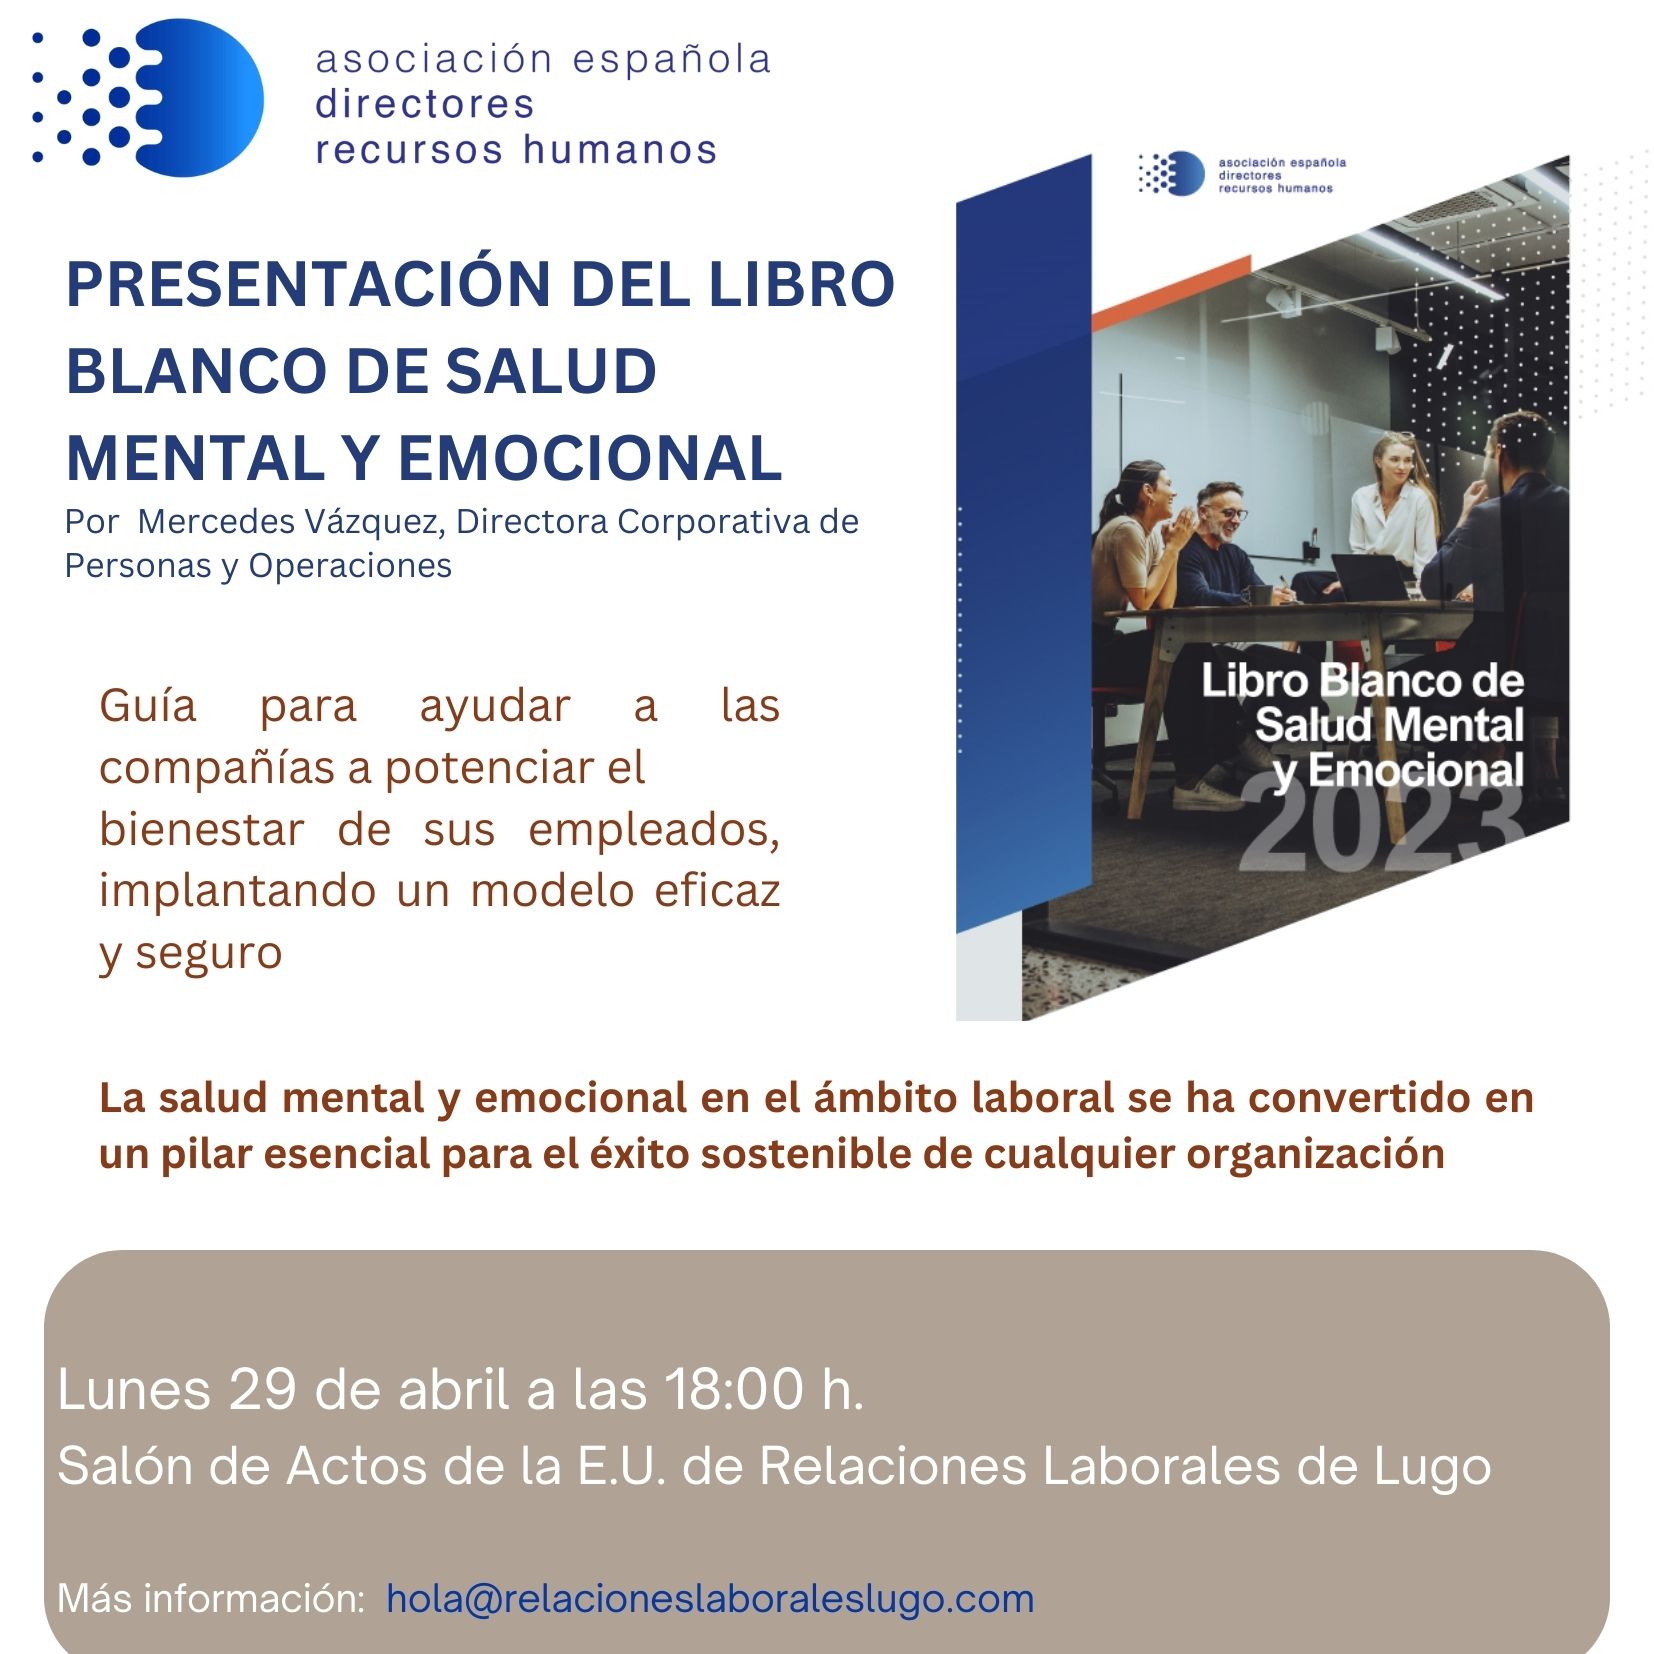 Presentación del Libro Blanco de Salud Mental y Emocional AEDRH en E.U. de Relaciones Laborales y Recursos Humanos de Lugo